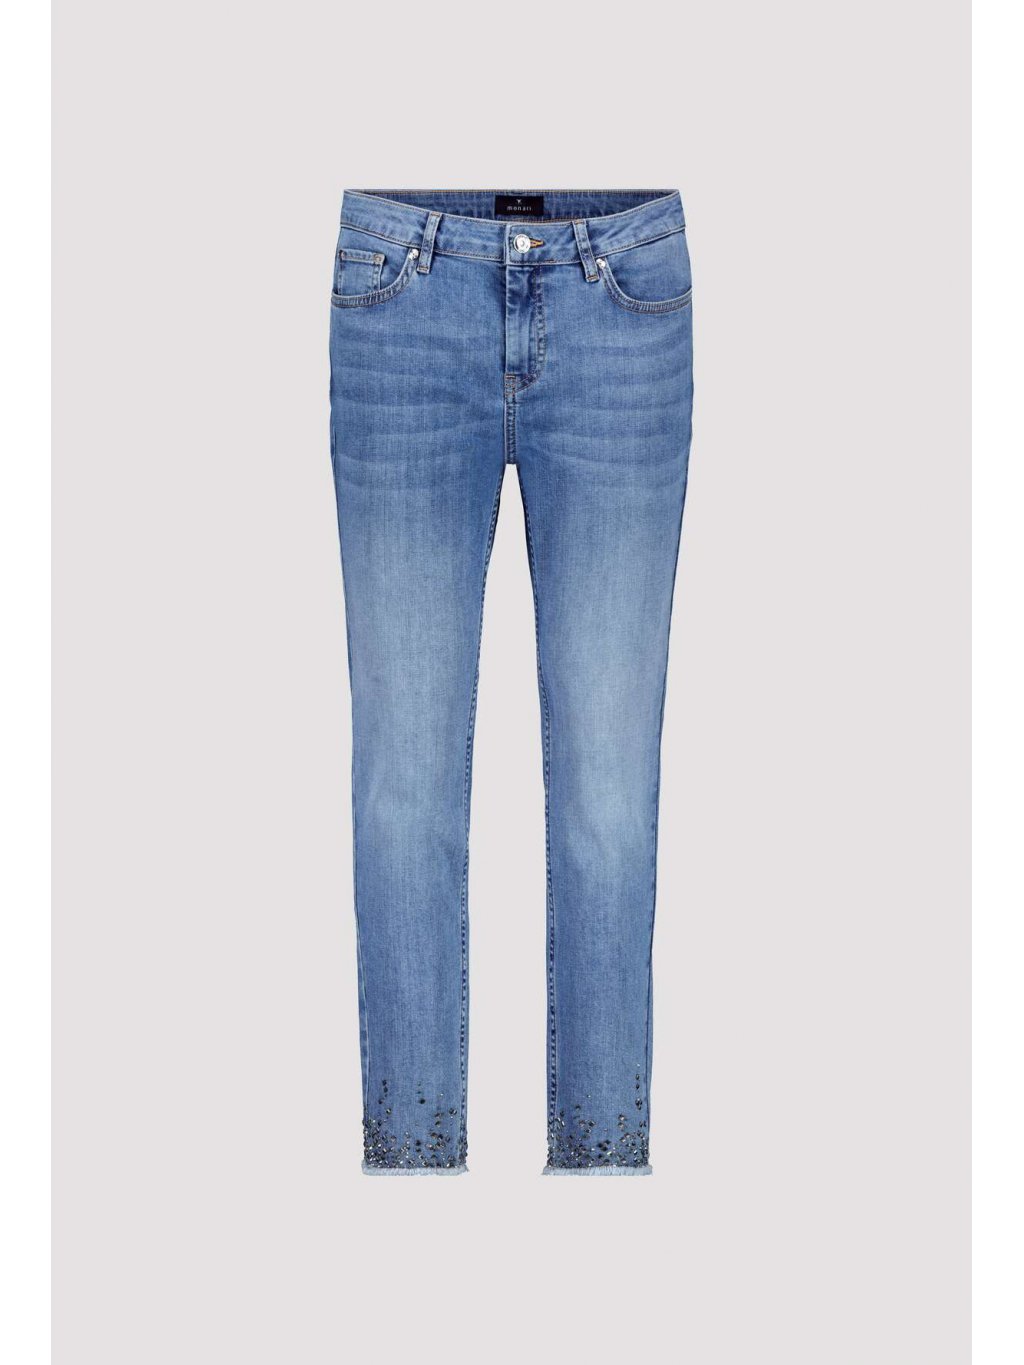 Kalhoty Monari 8393 světle modré džíny s kamínky